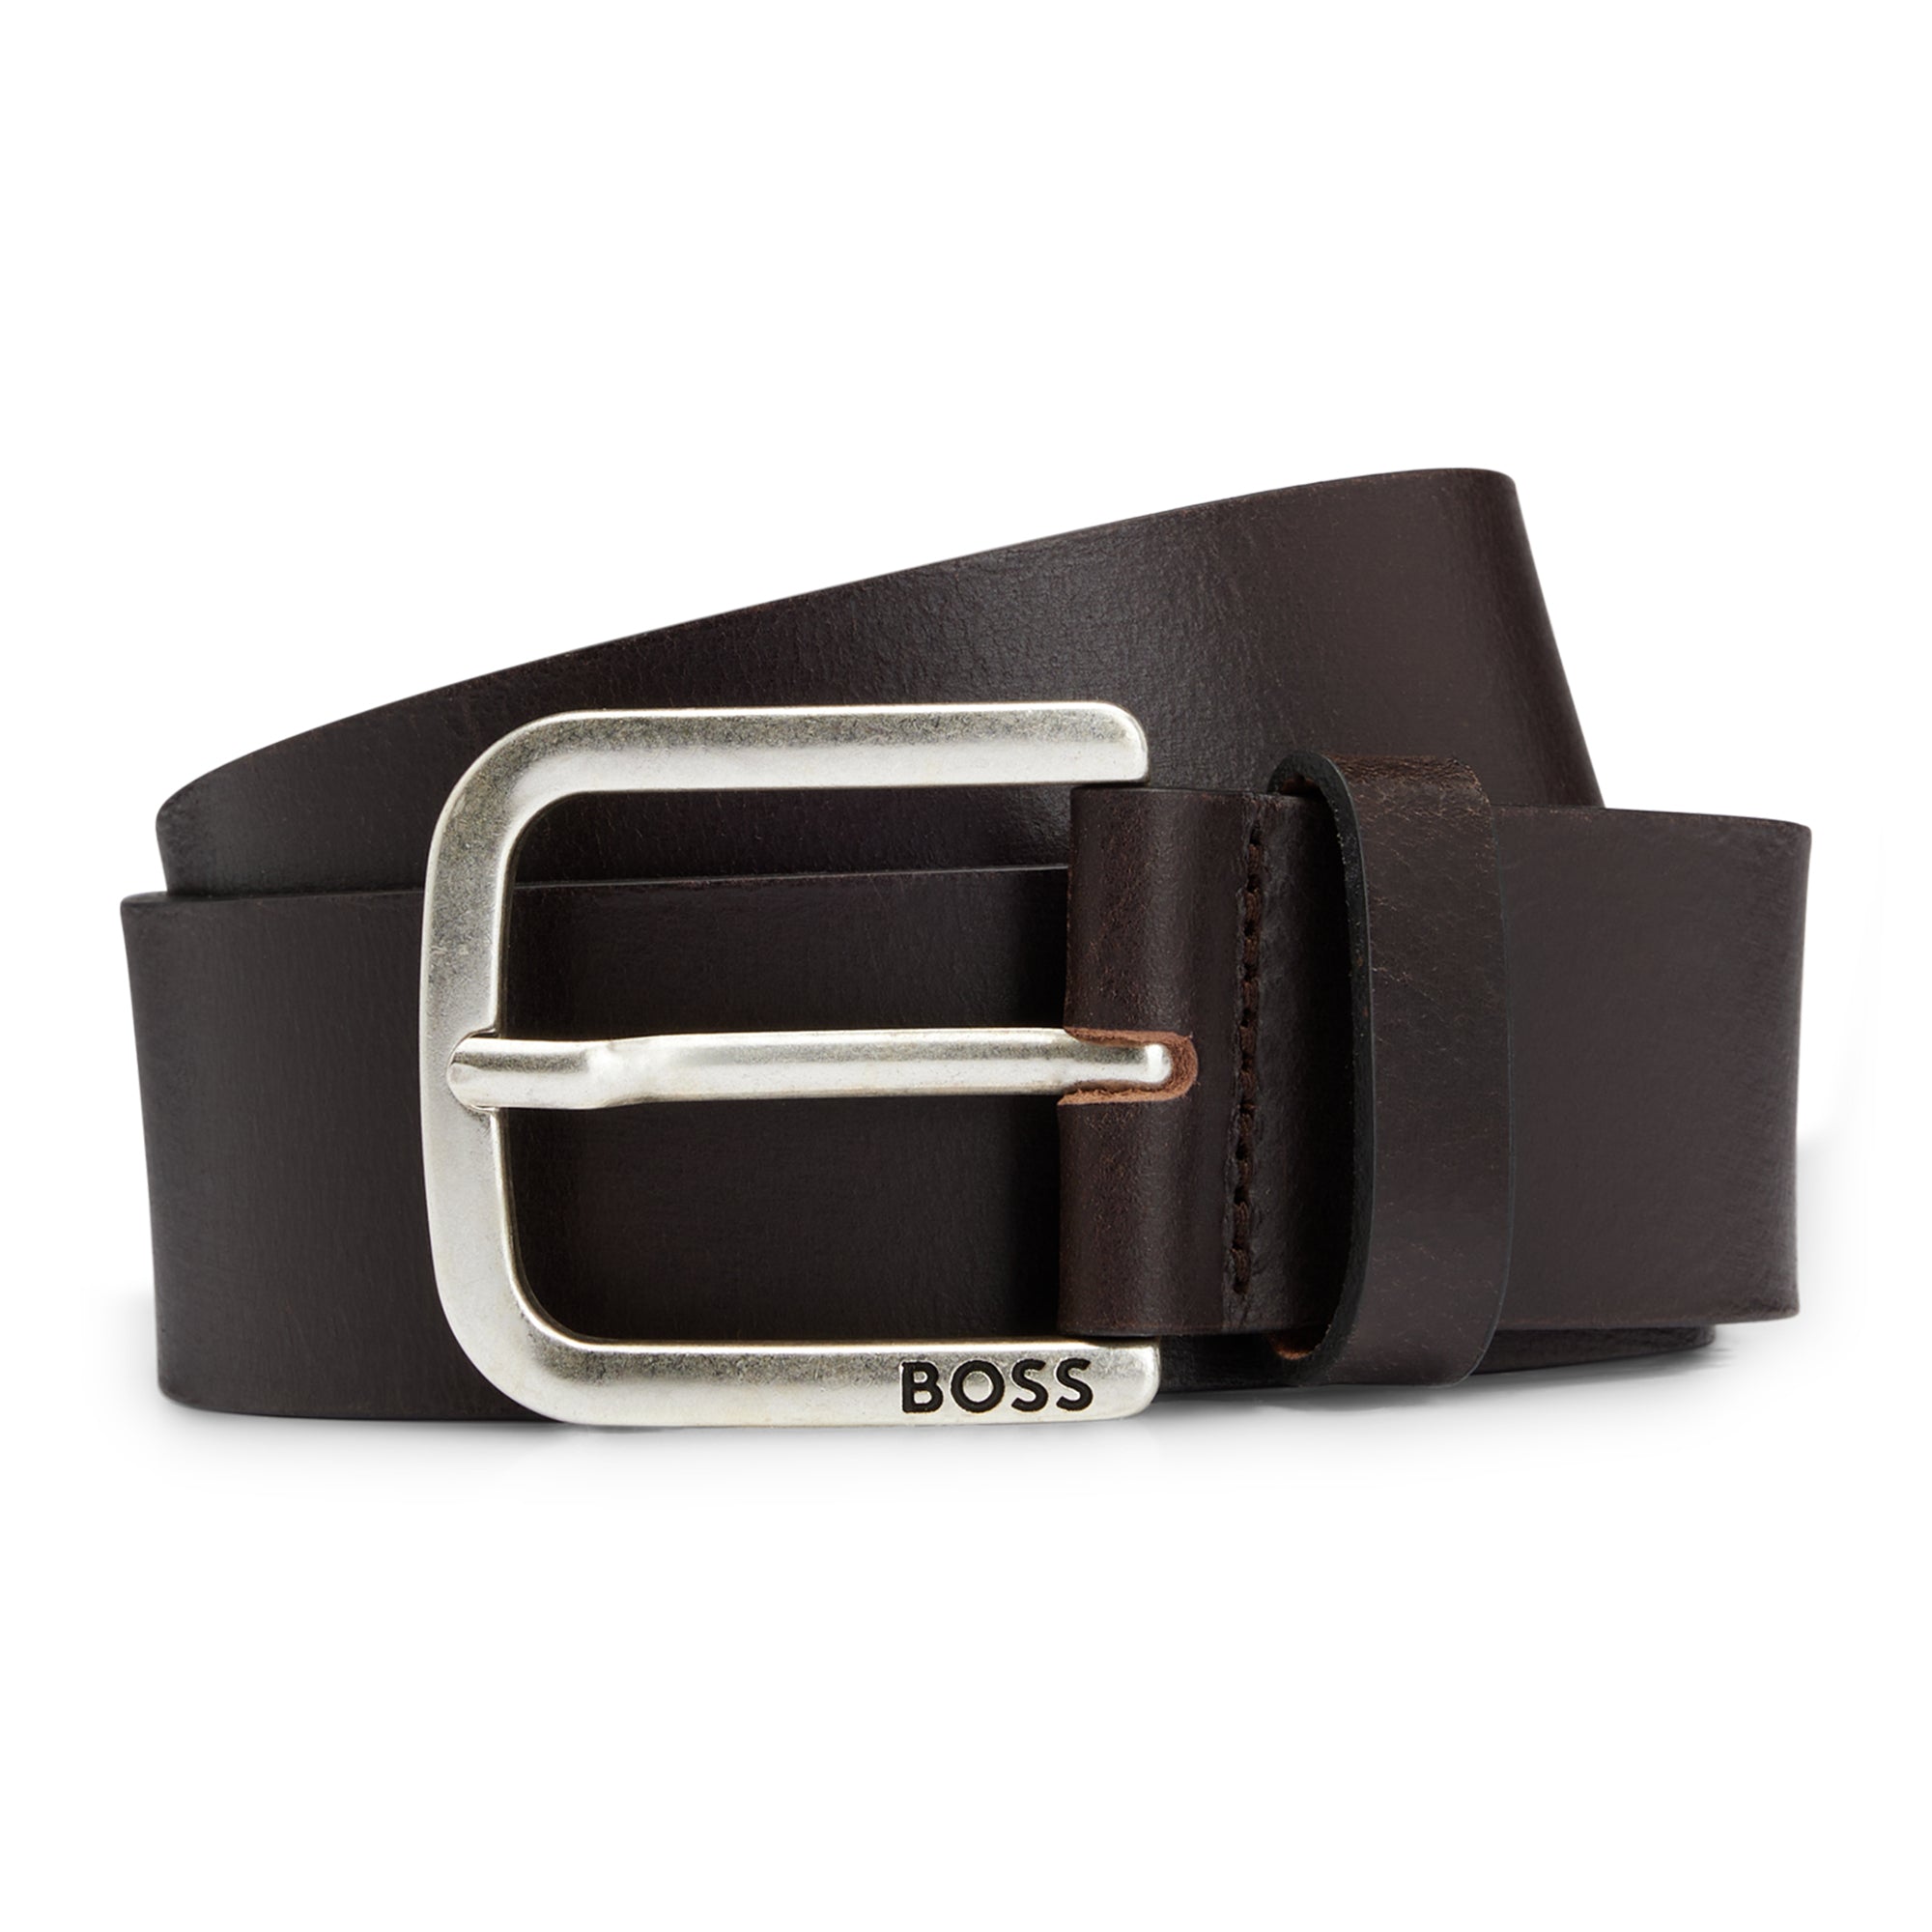 Boss Janni Sz40 Belt - Dark Brown